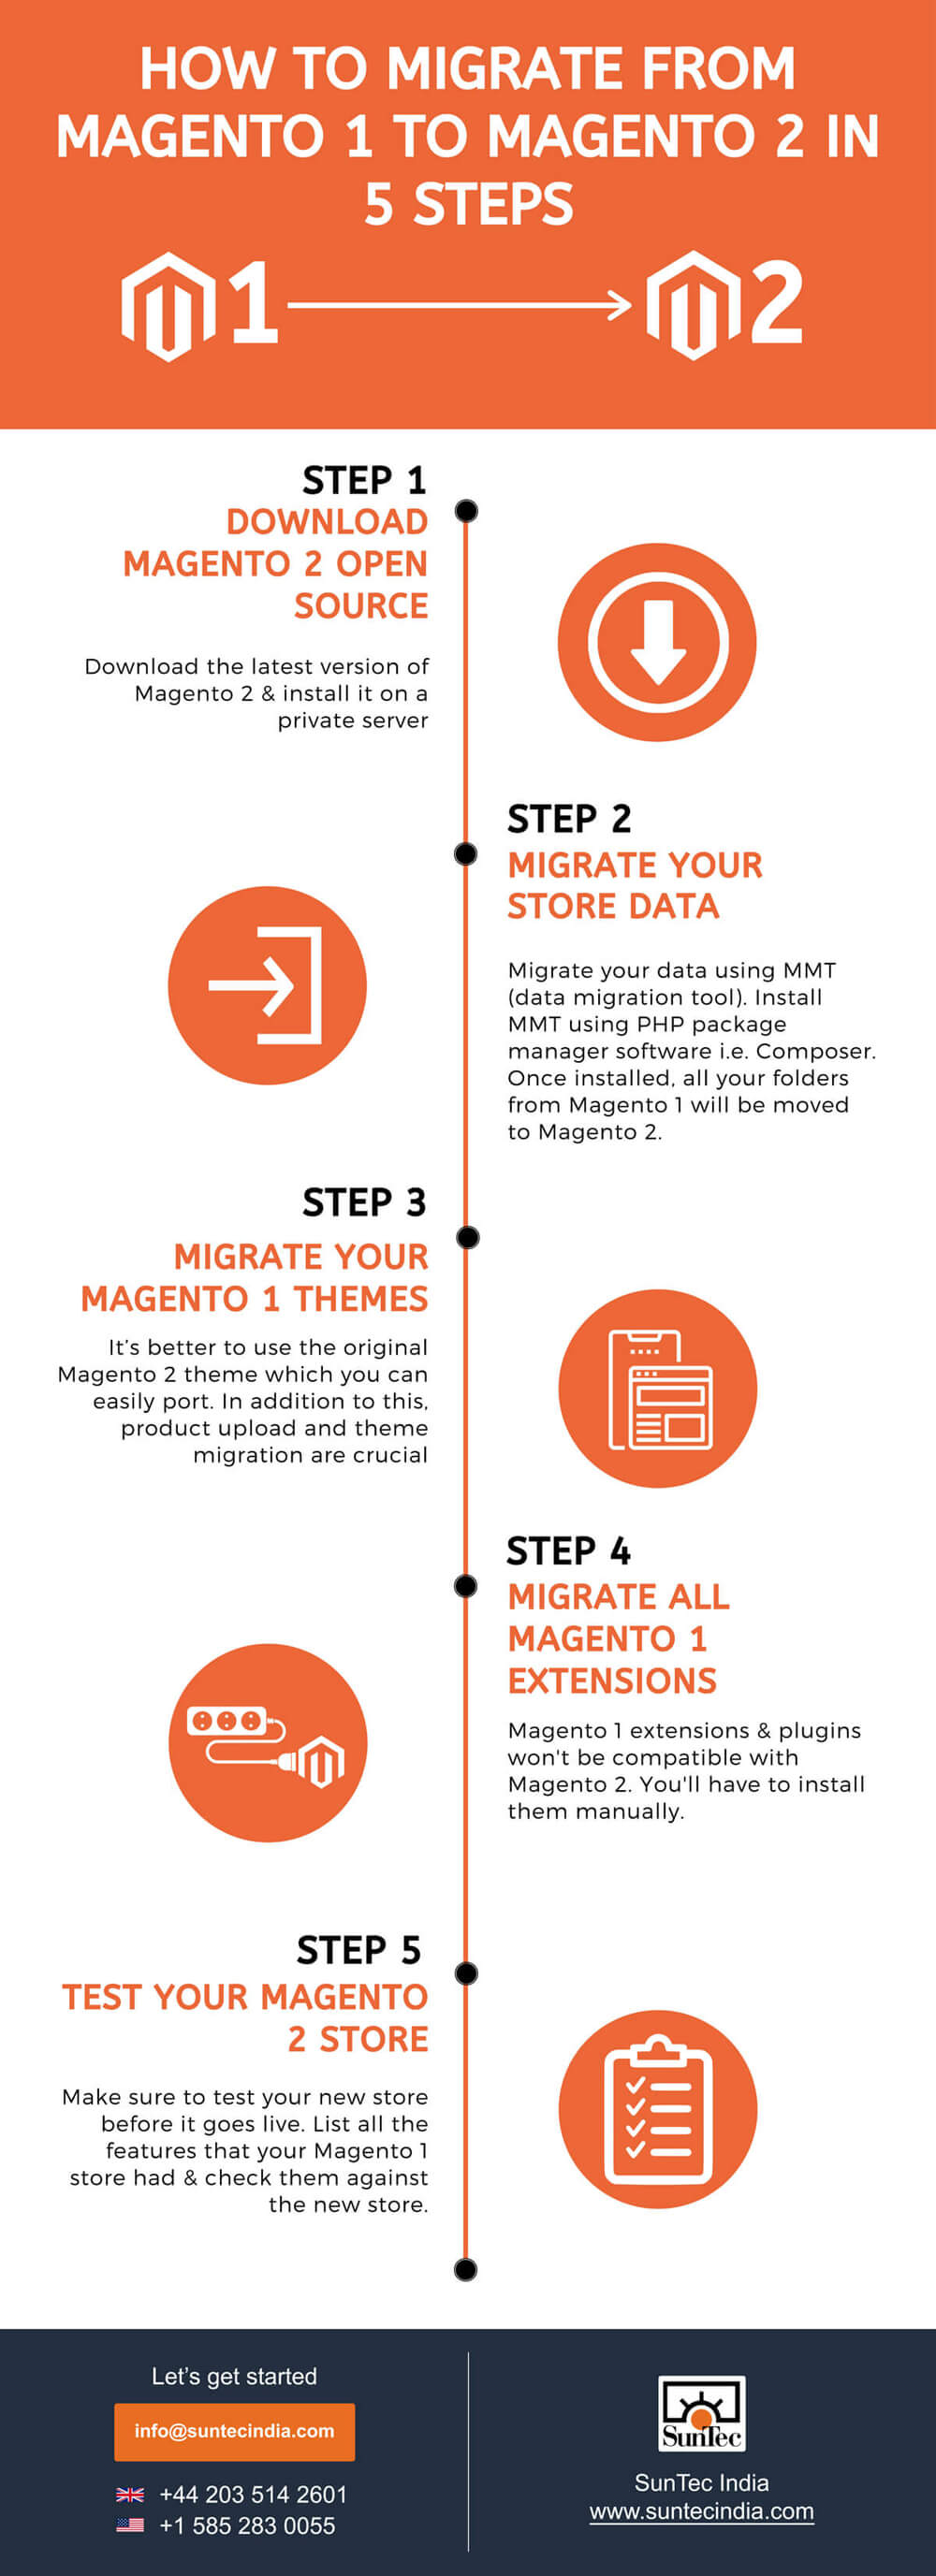 Tips to migrate from Magento 1 to Magento 2/>
      </div>
      
    </div>
  </div>
</div>



</li>


<li class=